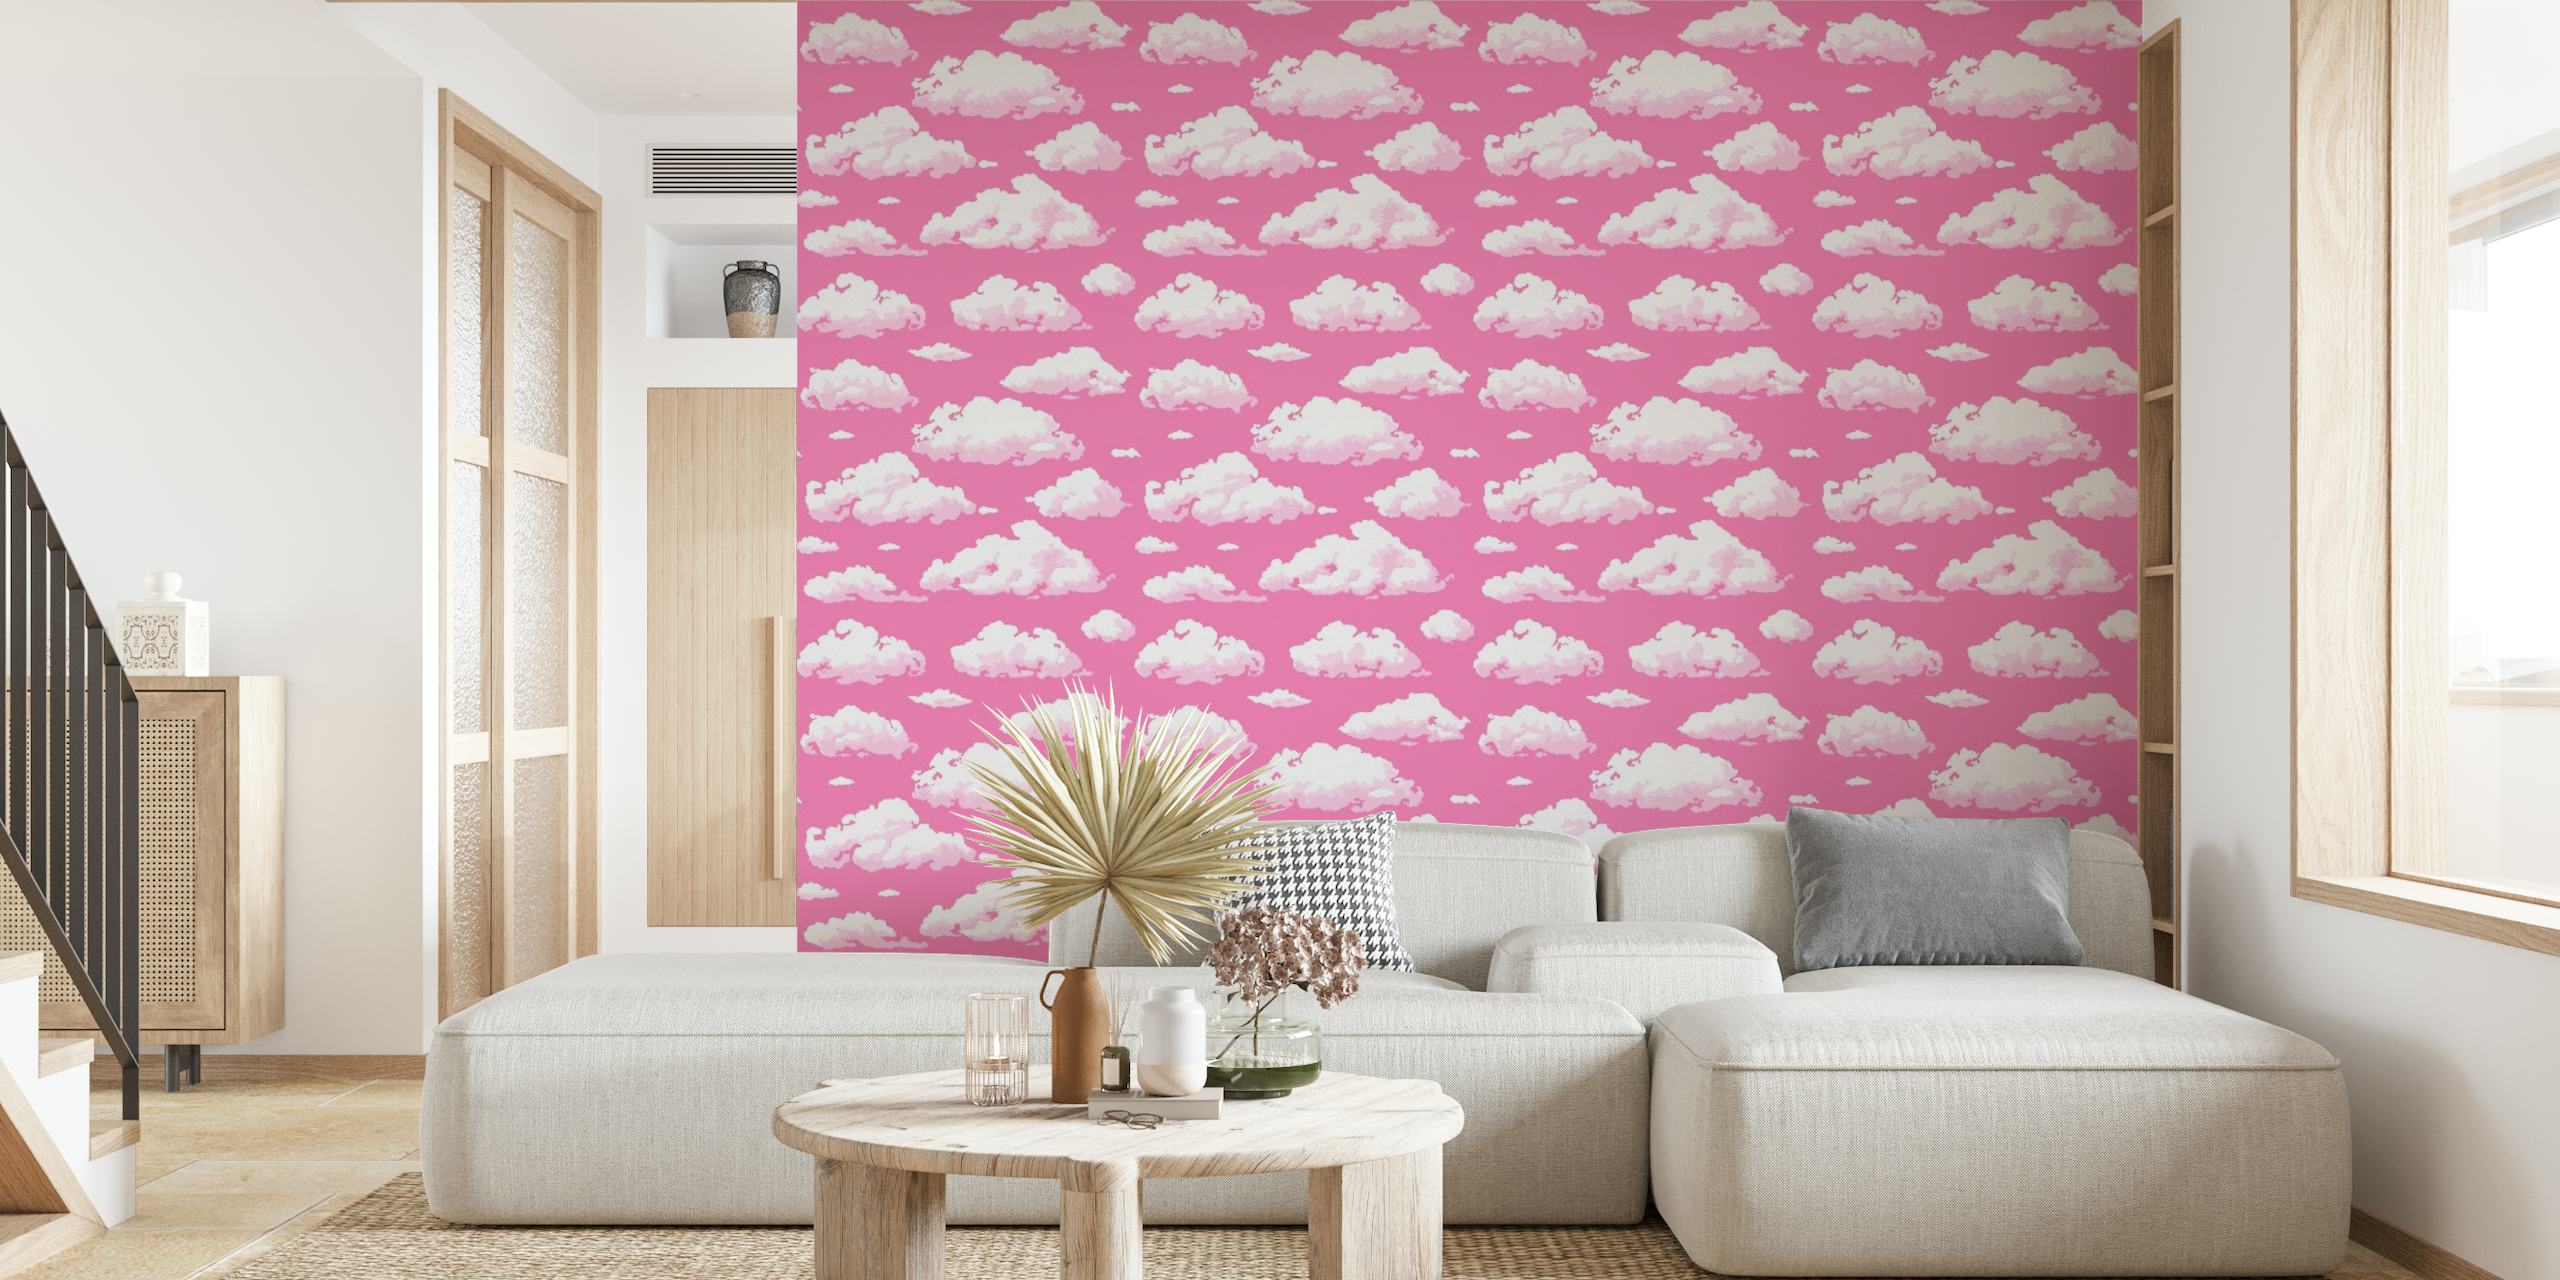 Cloudy sky on pink papel pintado